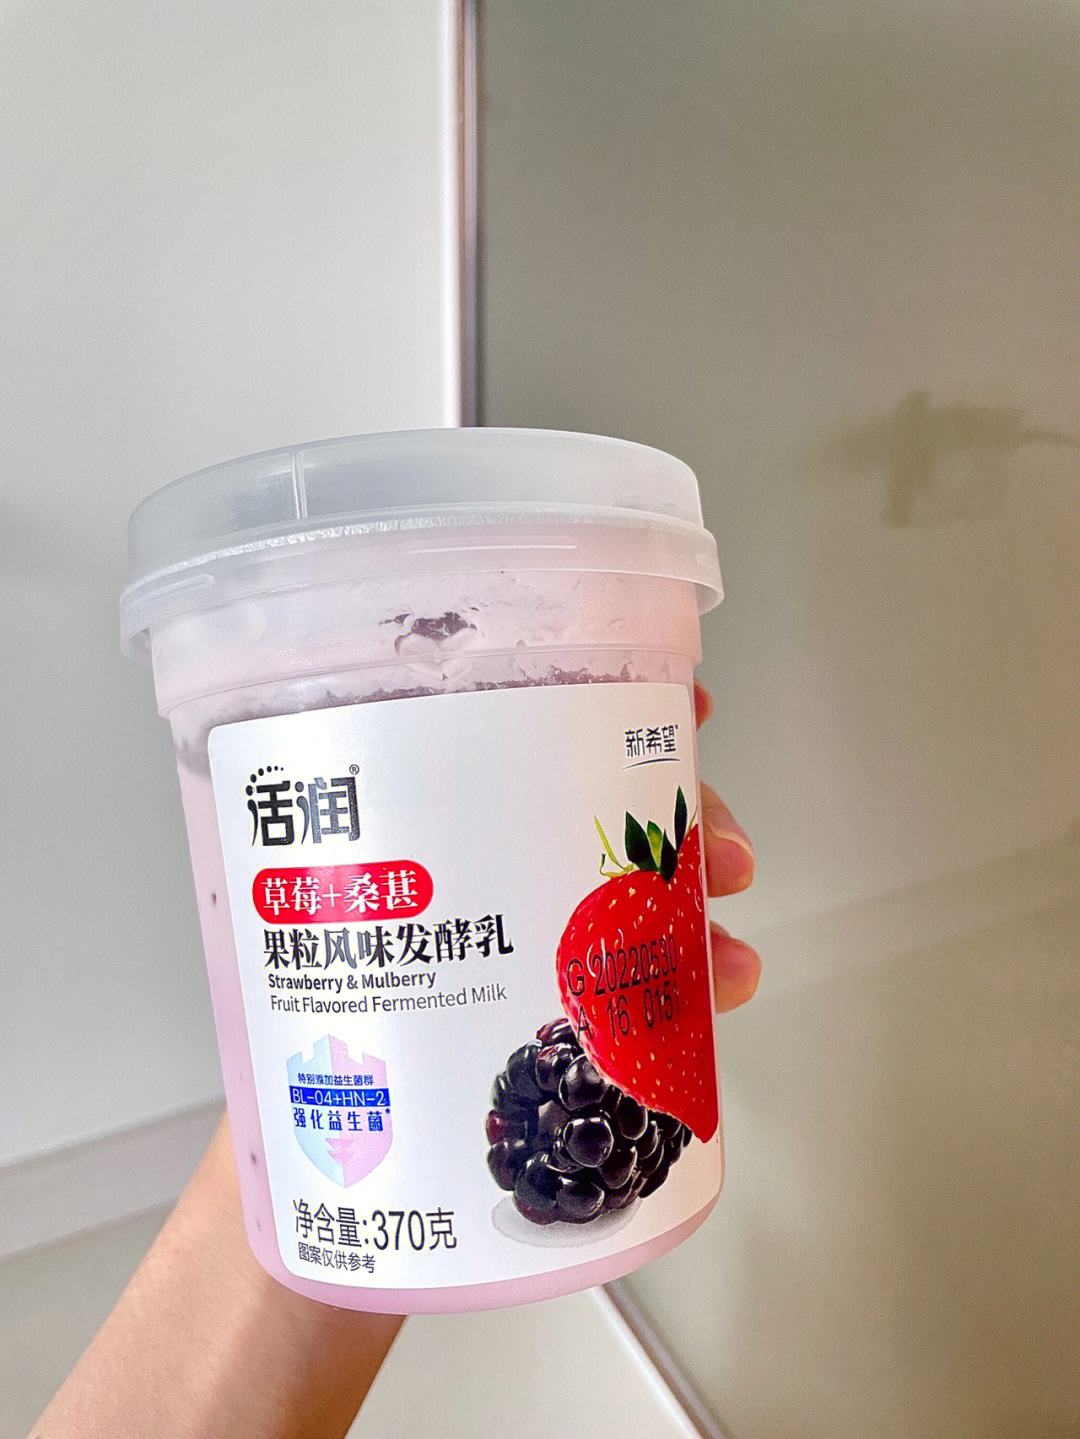 这款酸奶的质地较浓稠,偏固体,口感很绵密,内有草莓&桑葚果肉,桑葚的